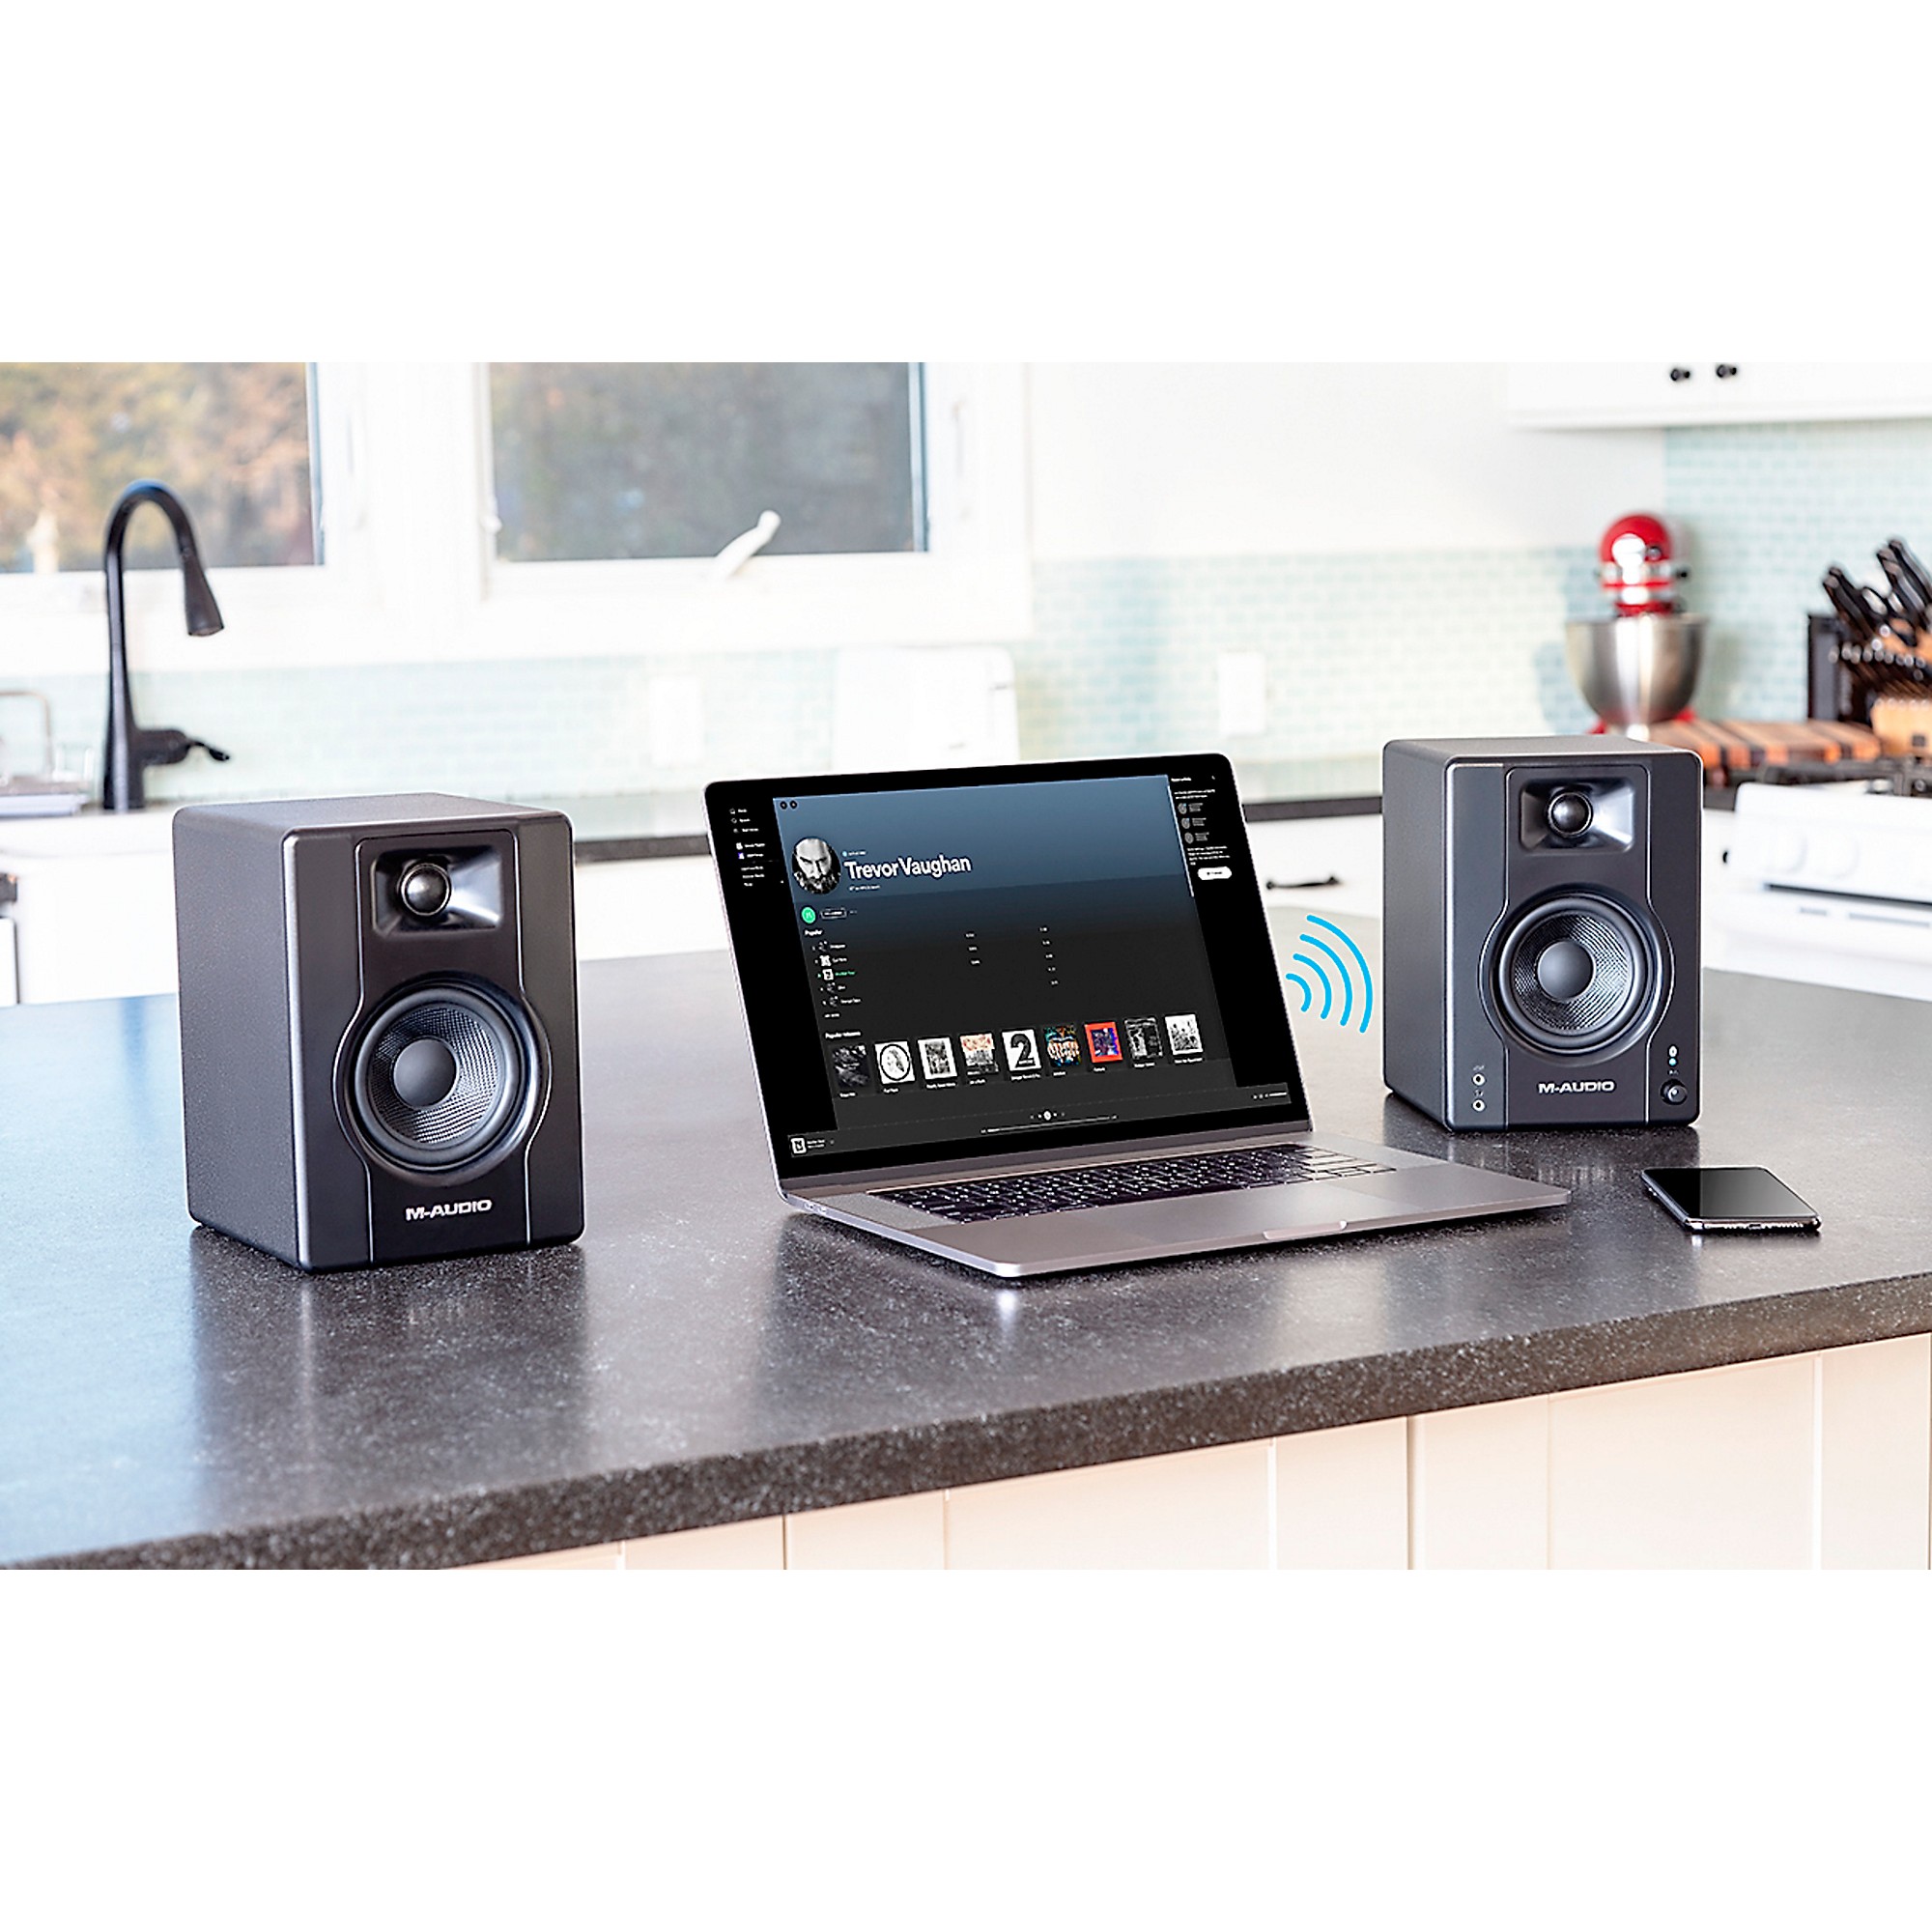  M-Audio BX4BT - Monitores de estudio Bluetooth de 4.5 pulgadas,  altavoces de PC HD para grabación y multimedia con software de producción  de música, 120 W, par : Todo lo demás